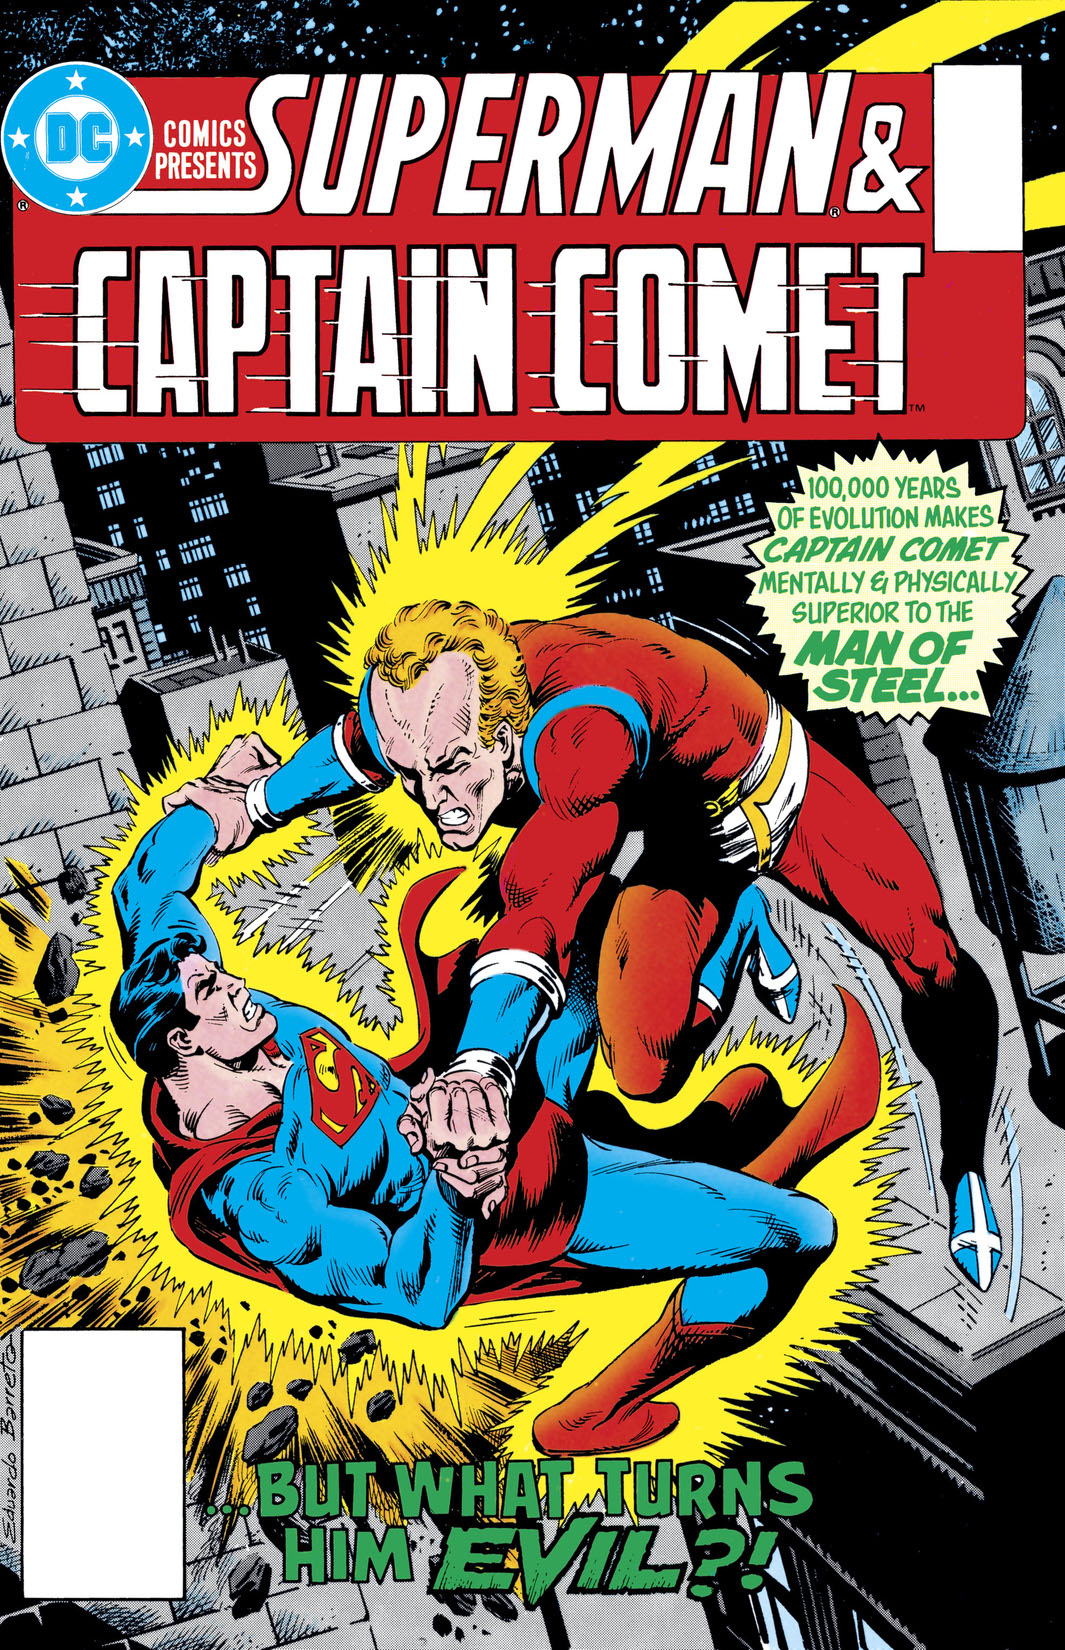 DC Comics Presents (1978-1986) #91 preview images